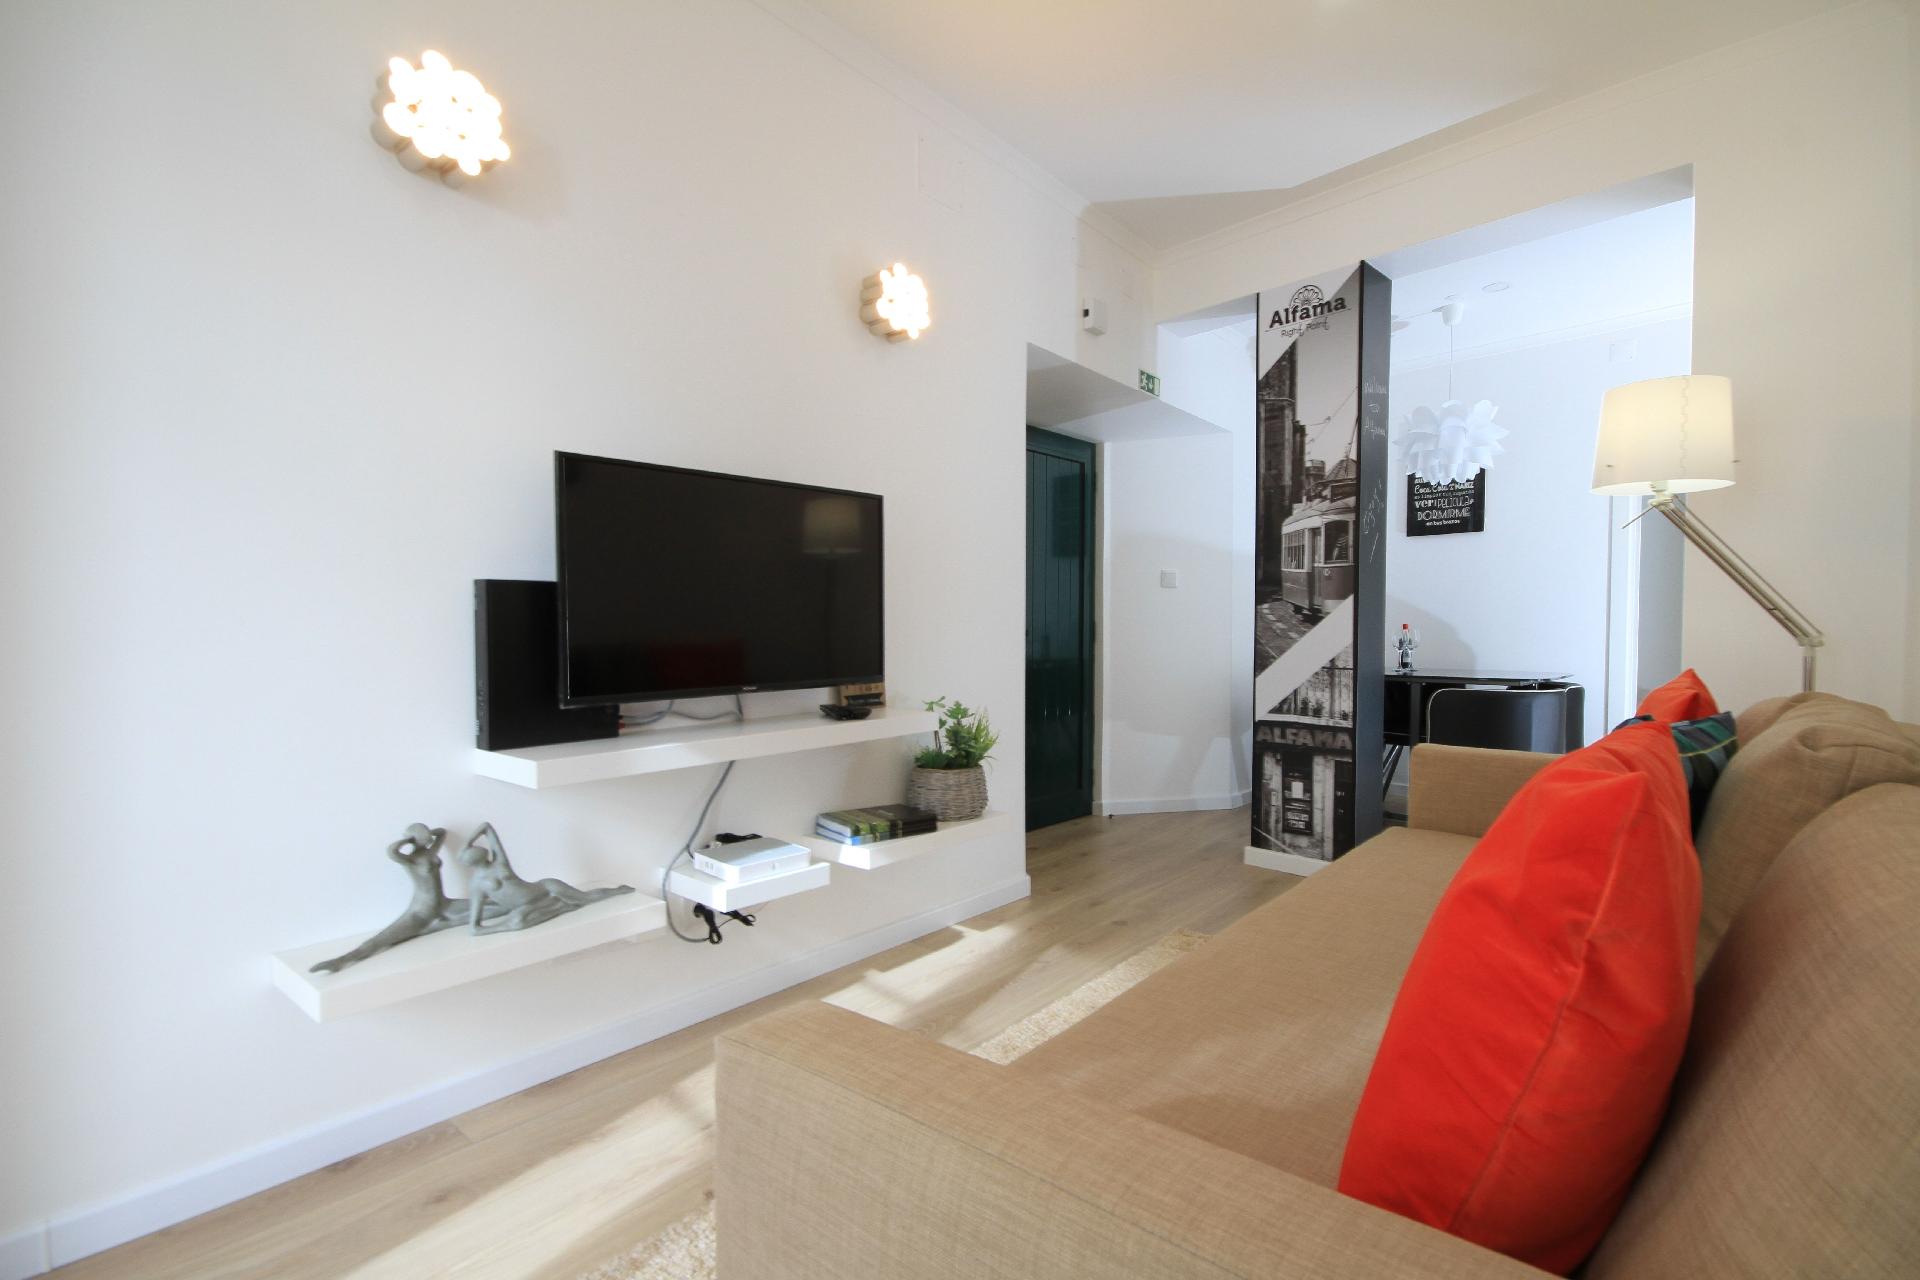 Ferienwohnung für 6 Personen ca. 45 m² i Ferienwohnung in Portugal